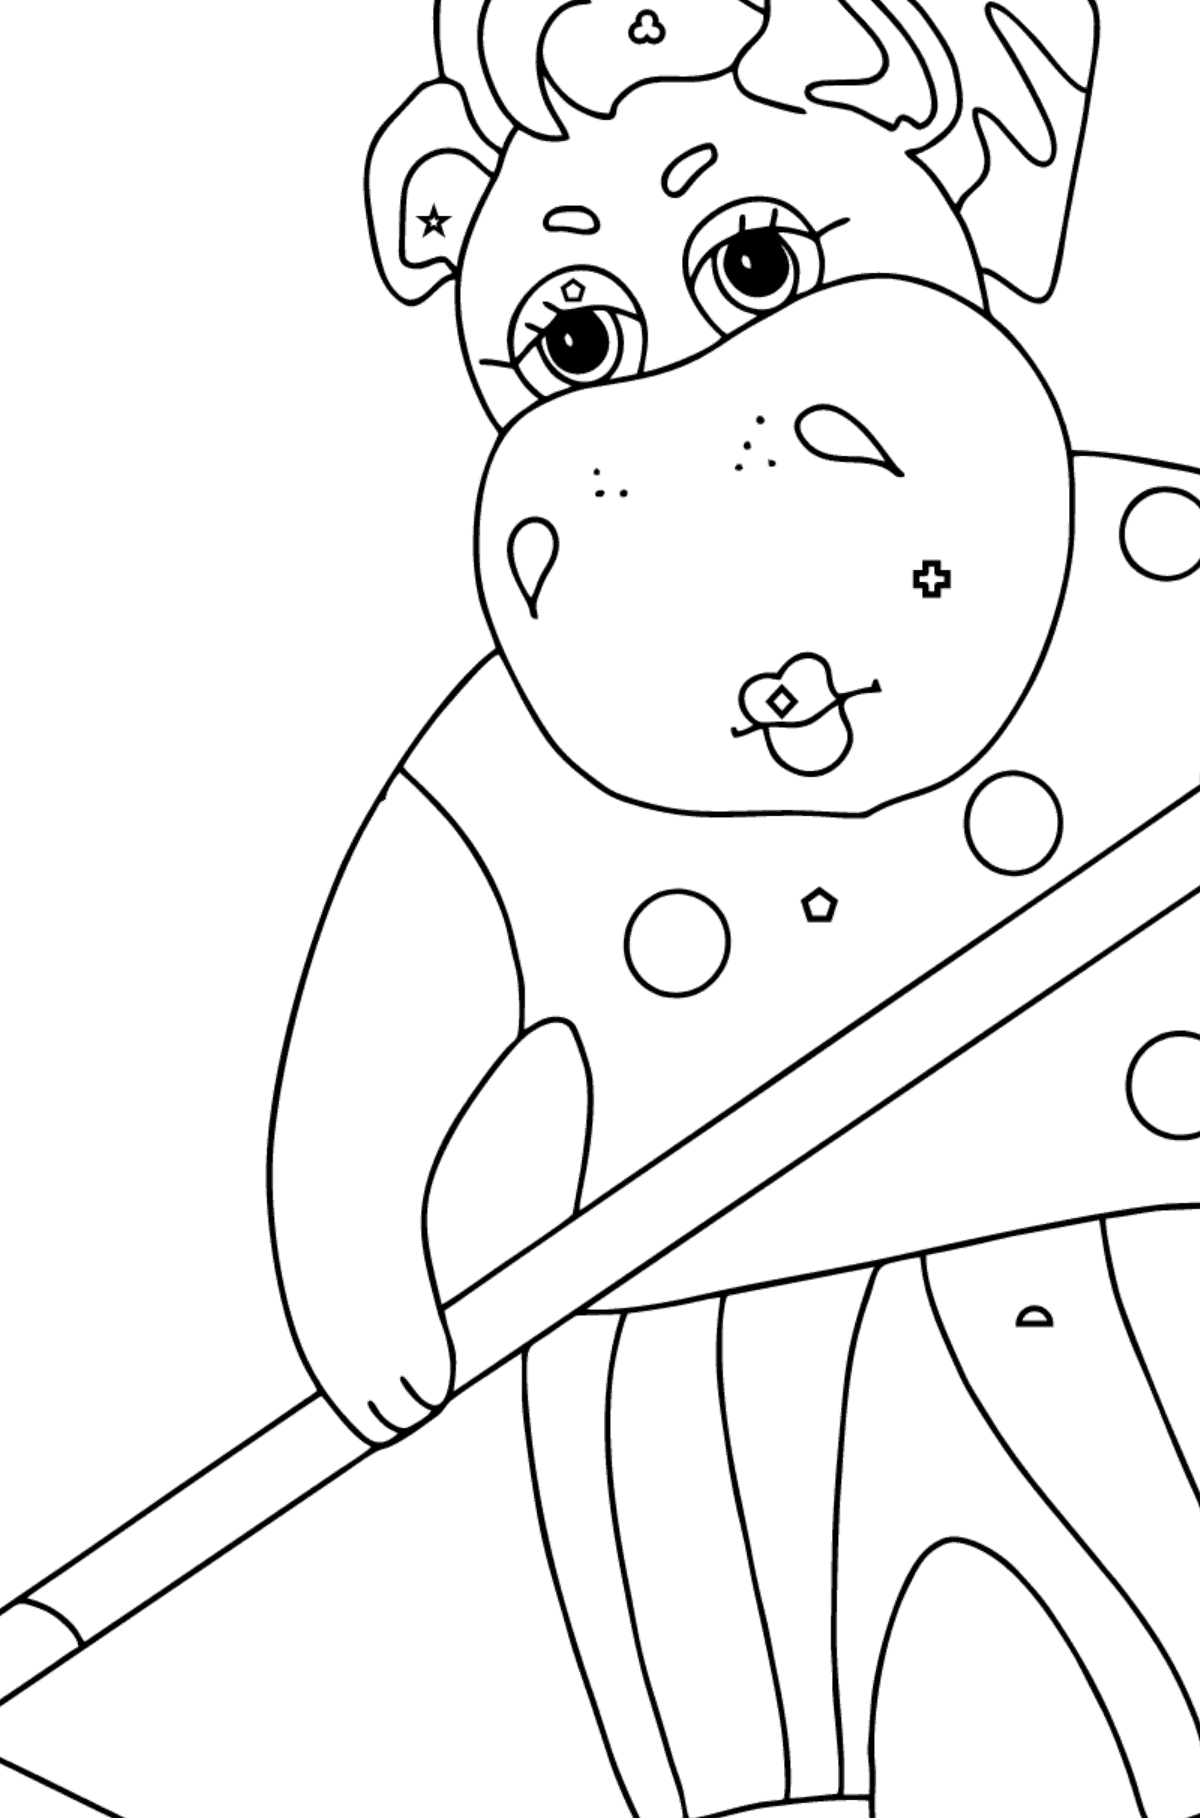 Dibujo de Lindo hipopótamo (simple) para colorear - Colorear por Formas Geométricas para Niños